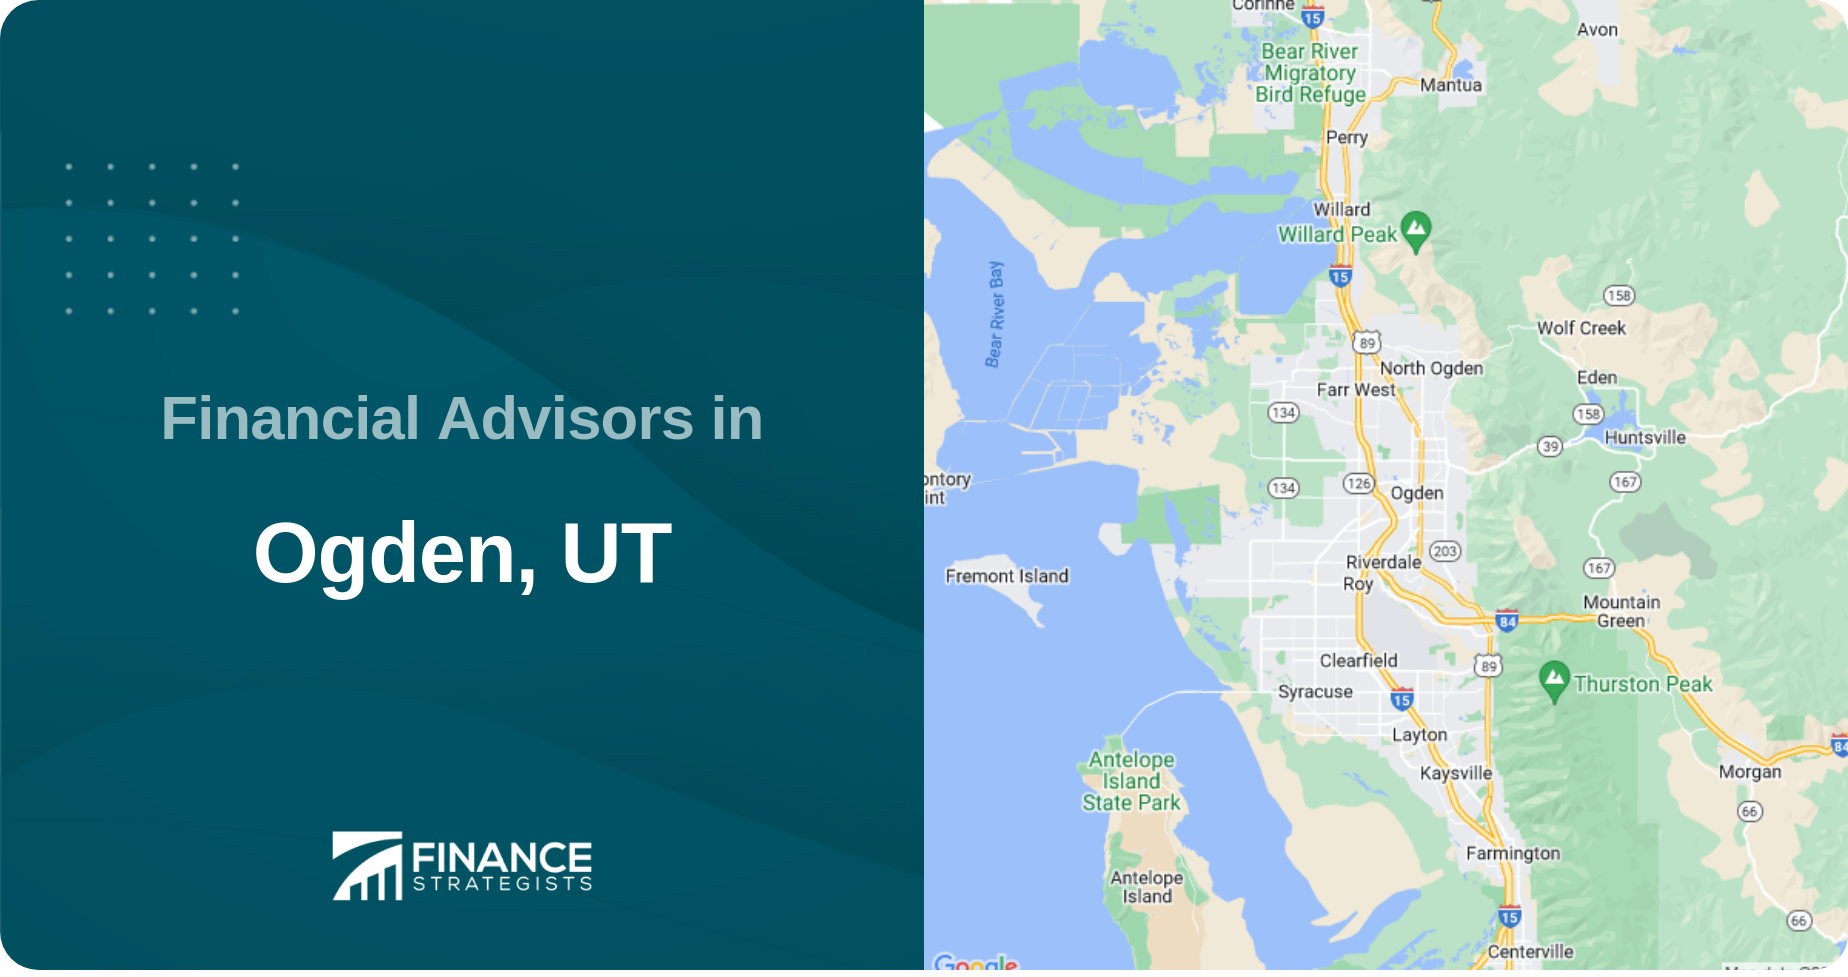 Financial Advisors in Ogden, UT